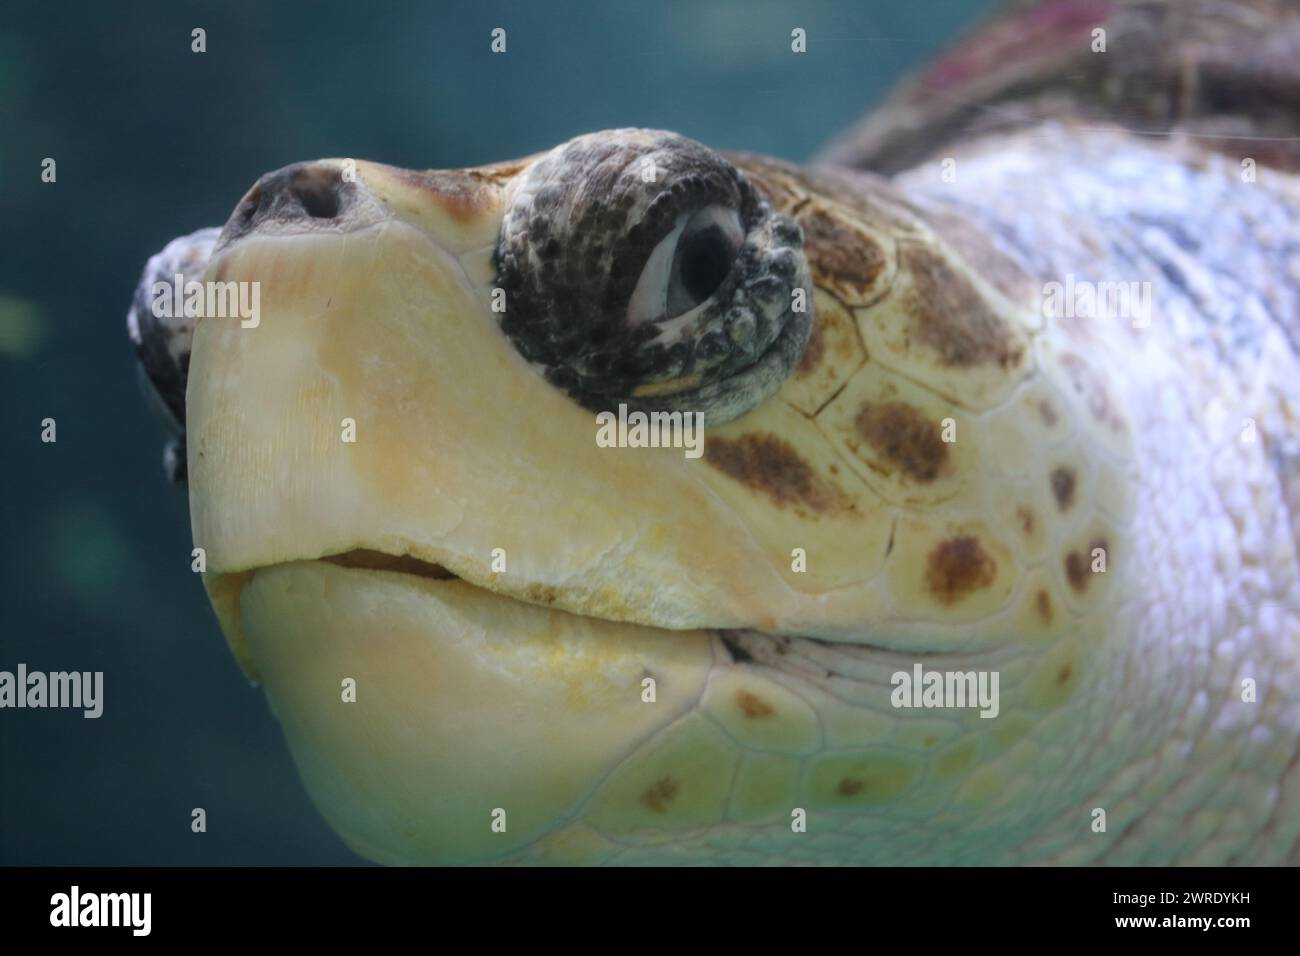 La tortue caouanne (Caretta caretta), ou caouanne, est une tortue océanique distribuée dans le monde entier. C'est un reptile marin, appartenant t Banque D'Images